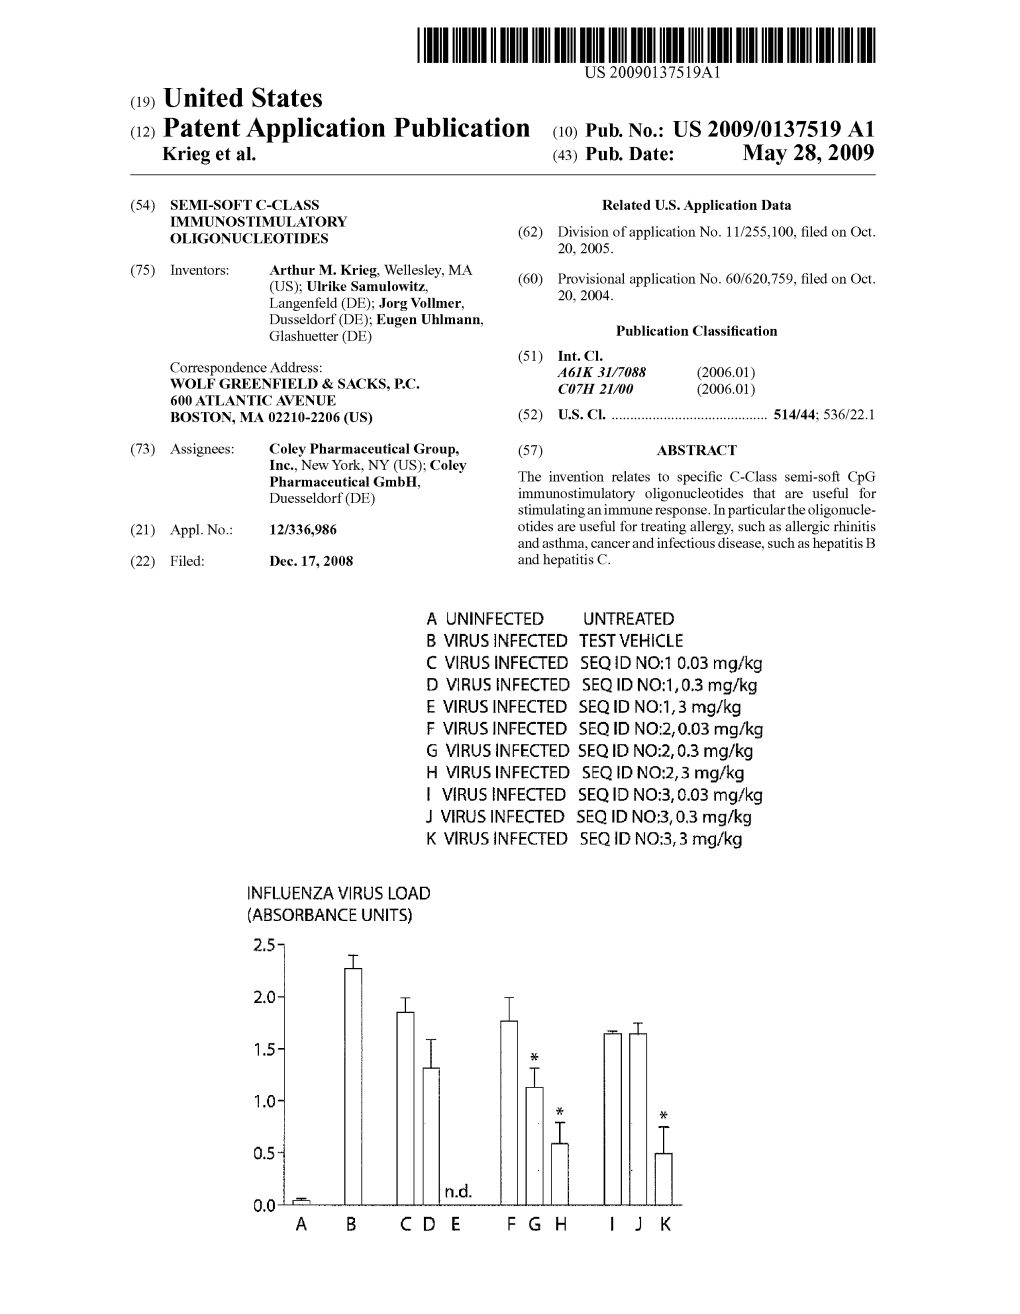 (12) Patent Application Publication (10) Pub. No.: US 2009/0137519 A1 Krieg Et Al